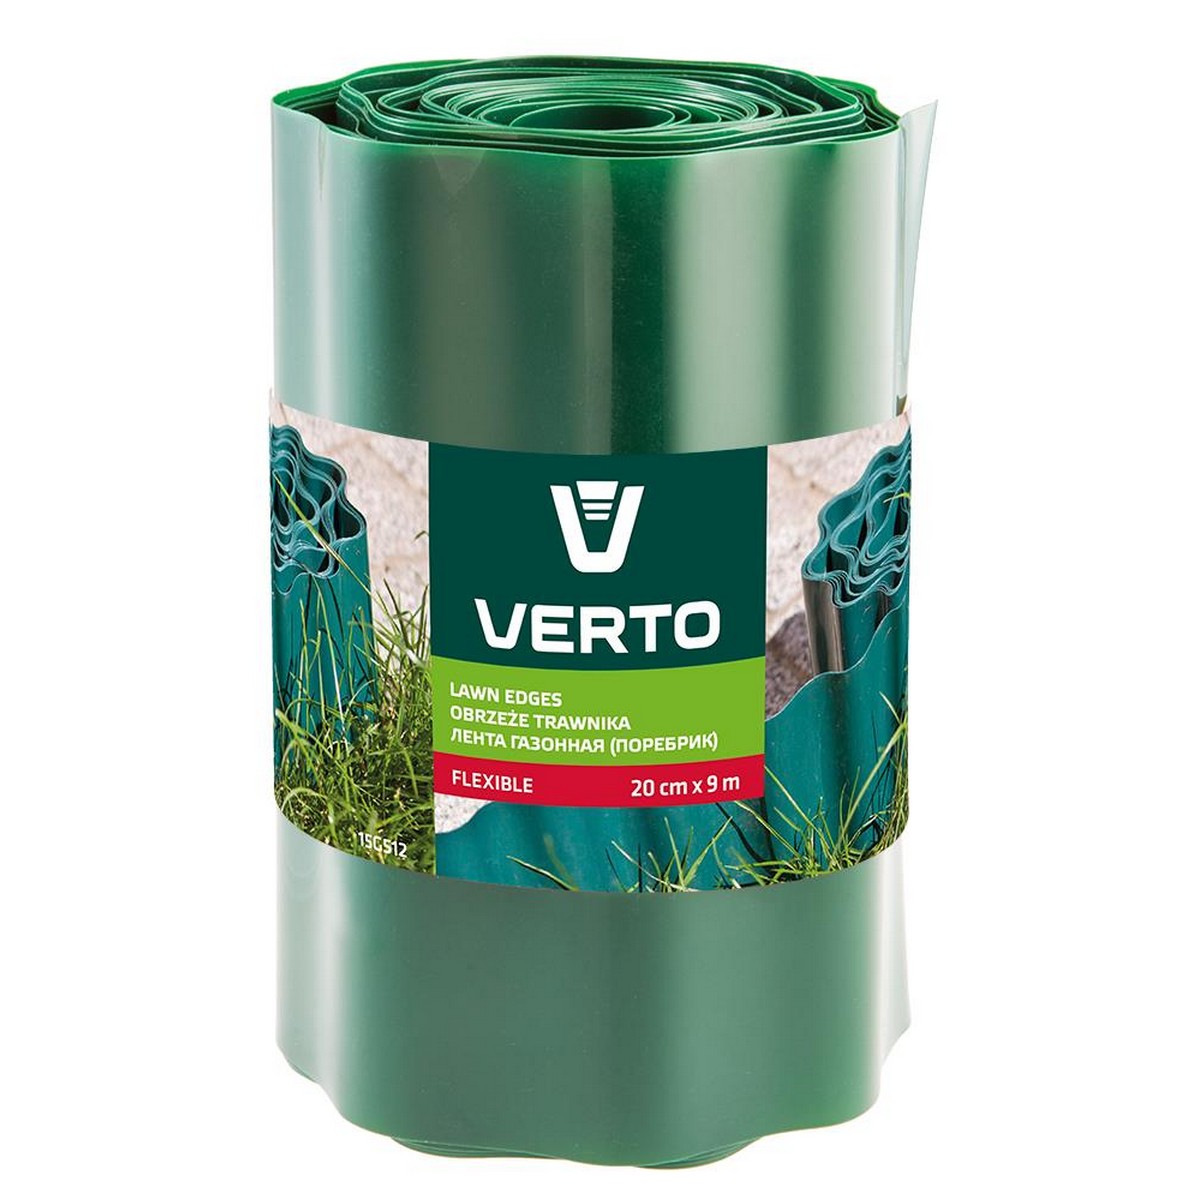 Купить лента газонная Verto 15G512 в Виннице